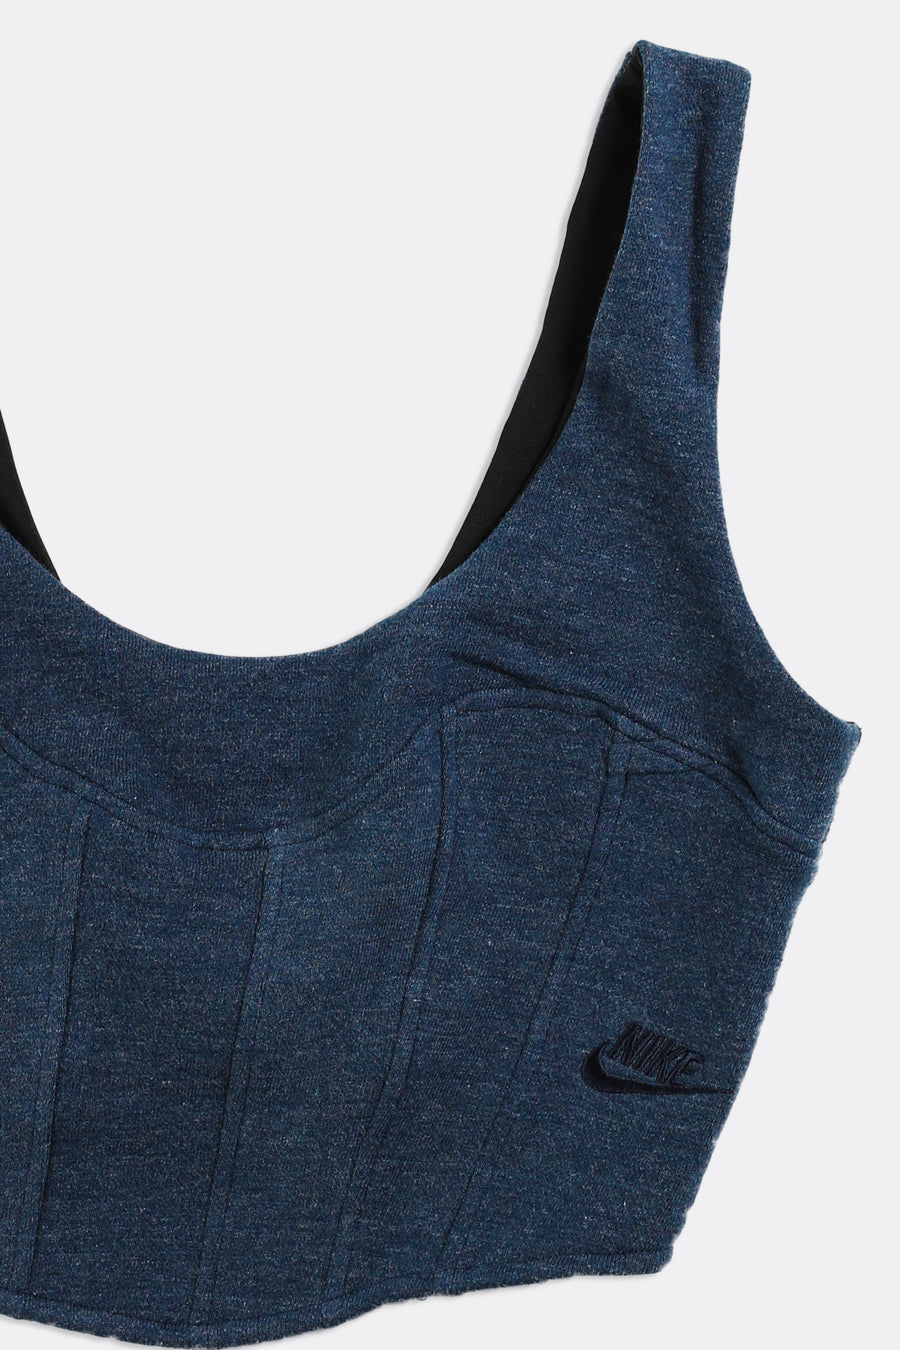 Rework Nike Sweatshirt Bustier - L